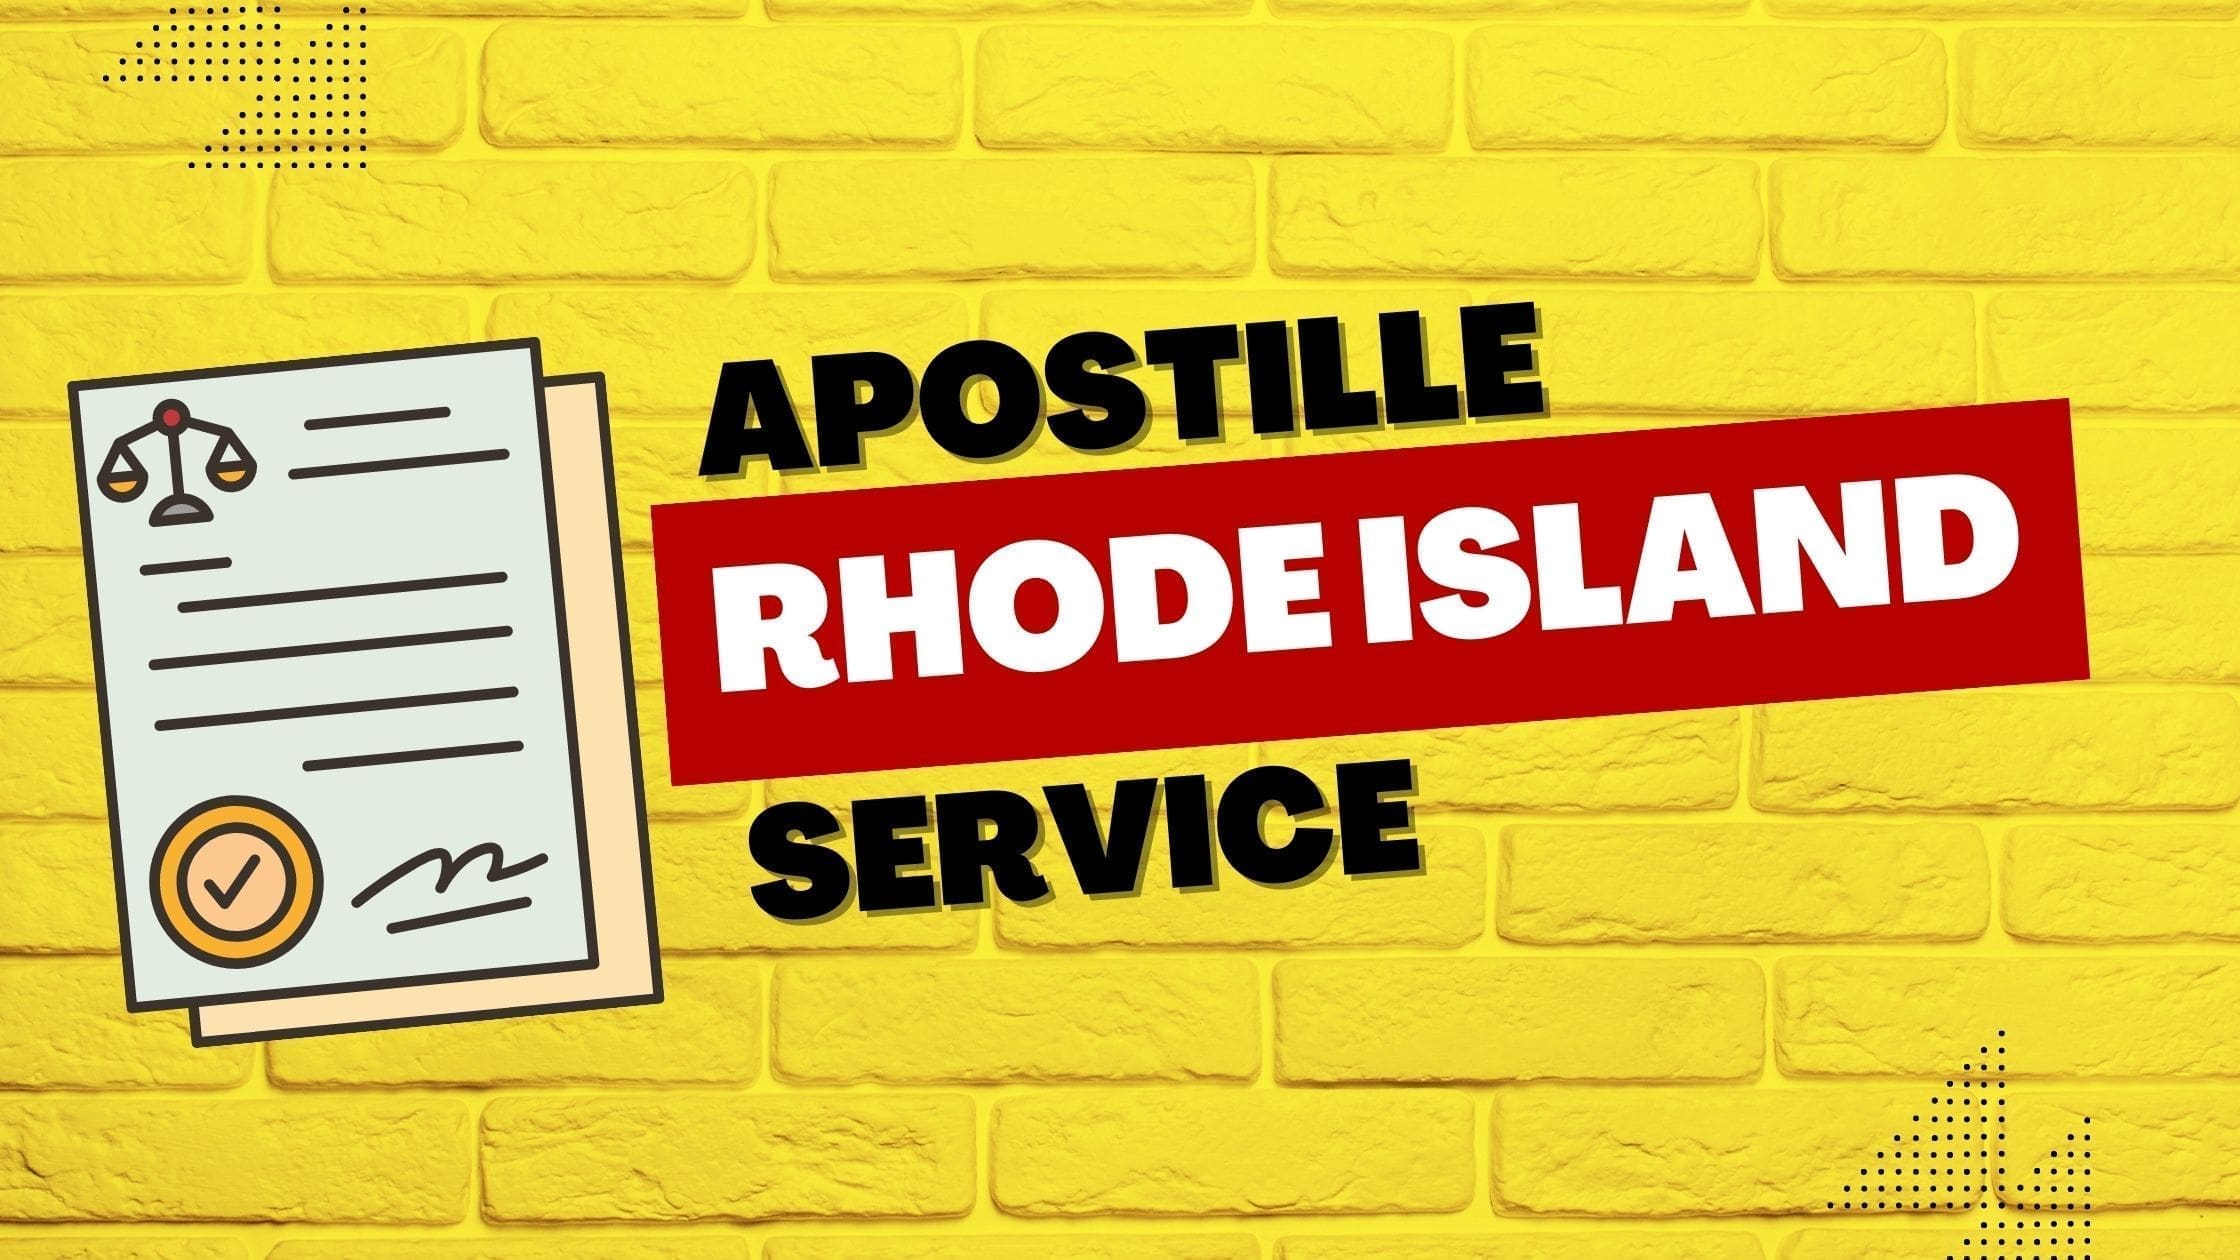 Rhode Island Apostille Service